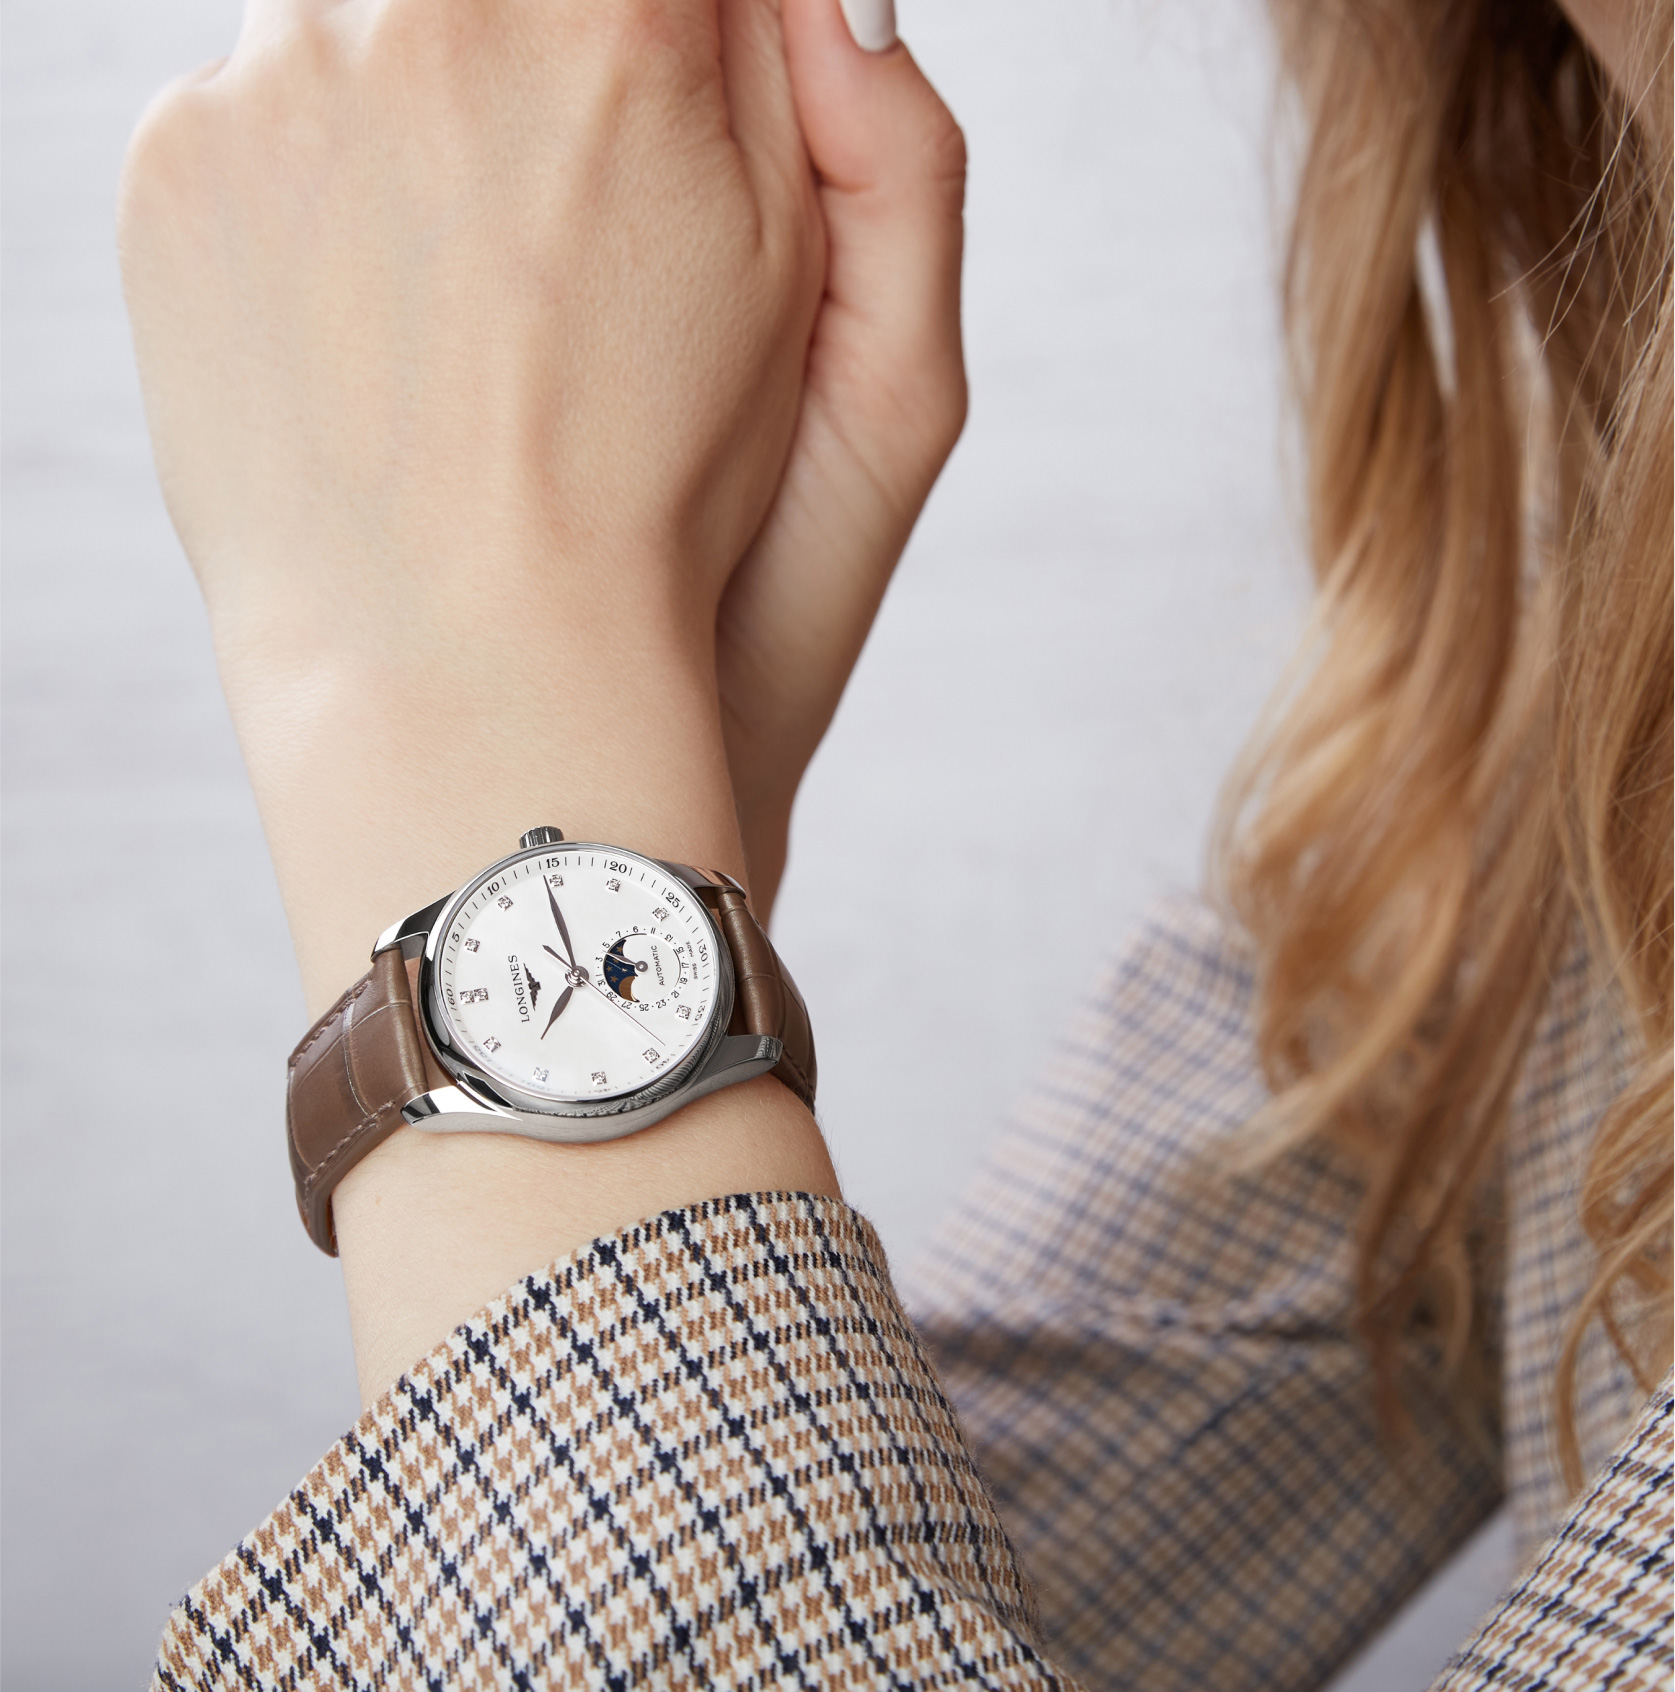 Классические часы на женской руке. Фотосет ребрендинга.